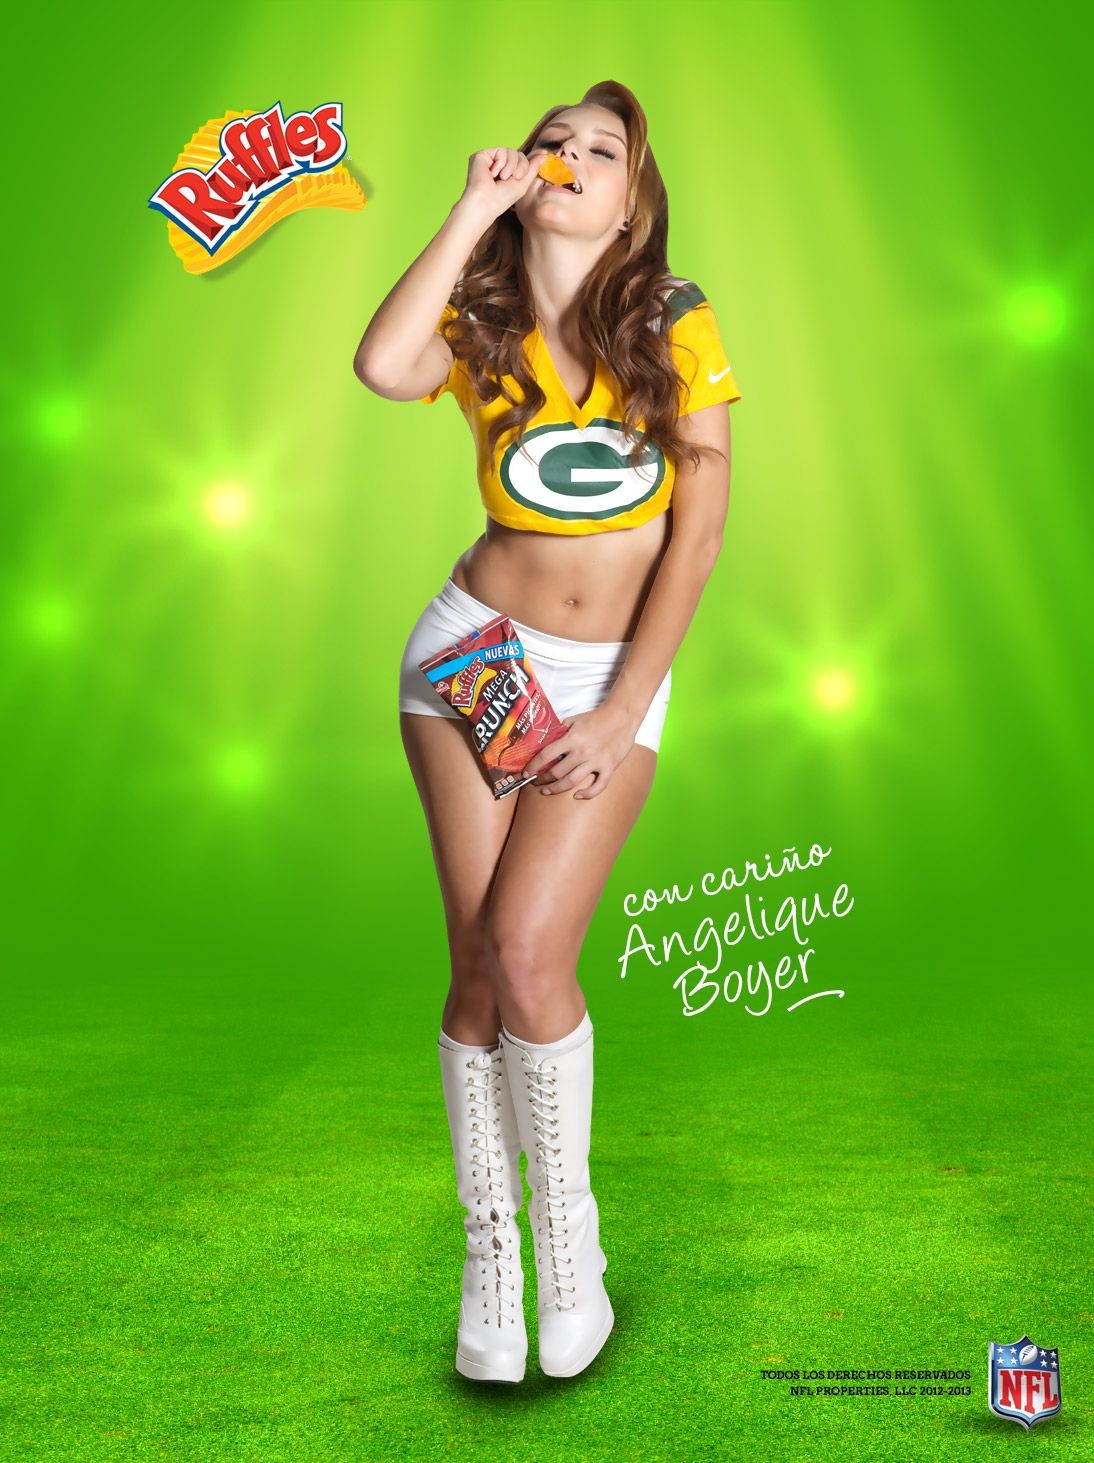 Angelique boyer en sosies de maillots sexy dans des promos de la NFL
 #75243011